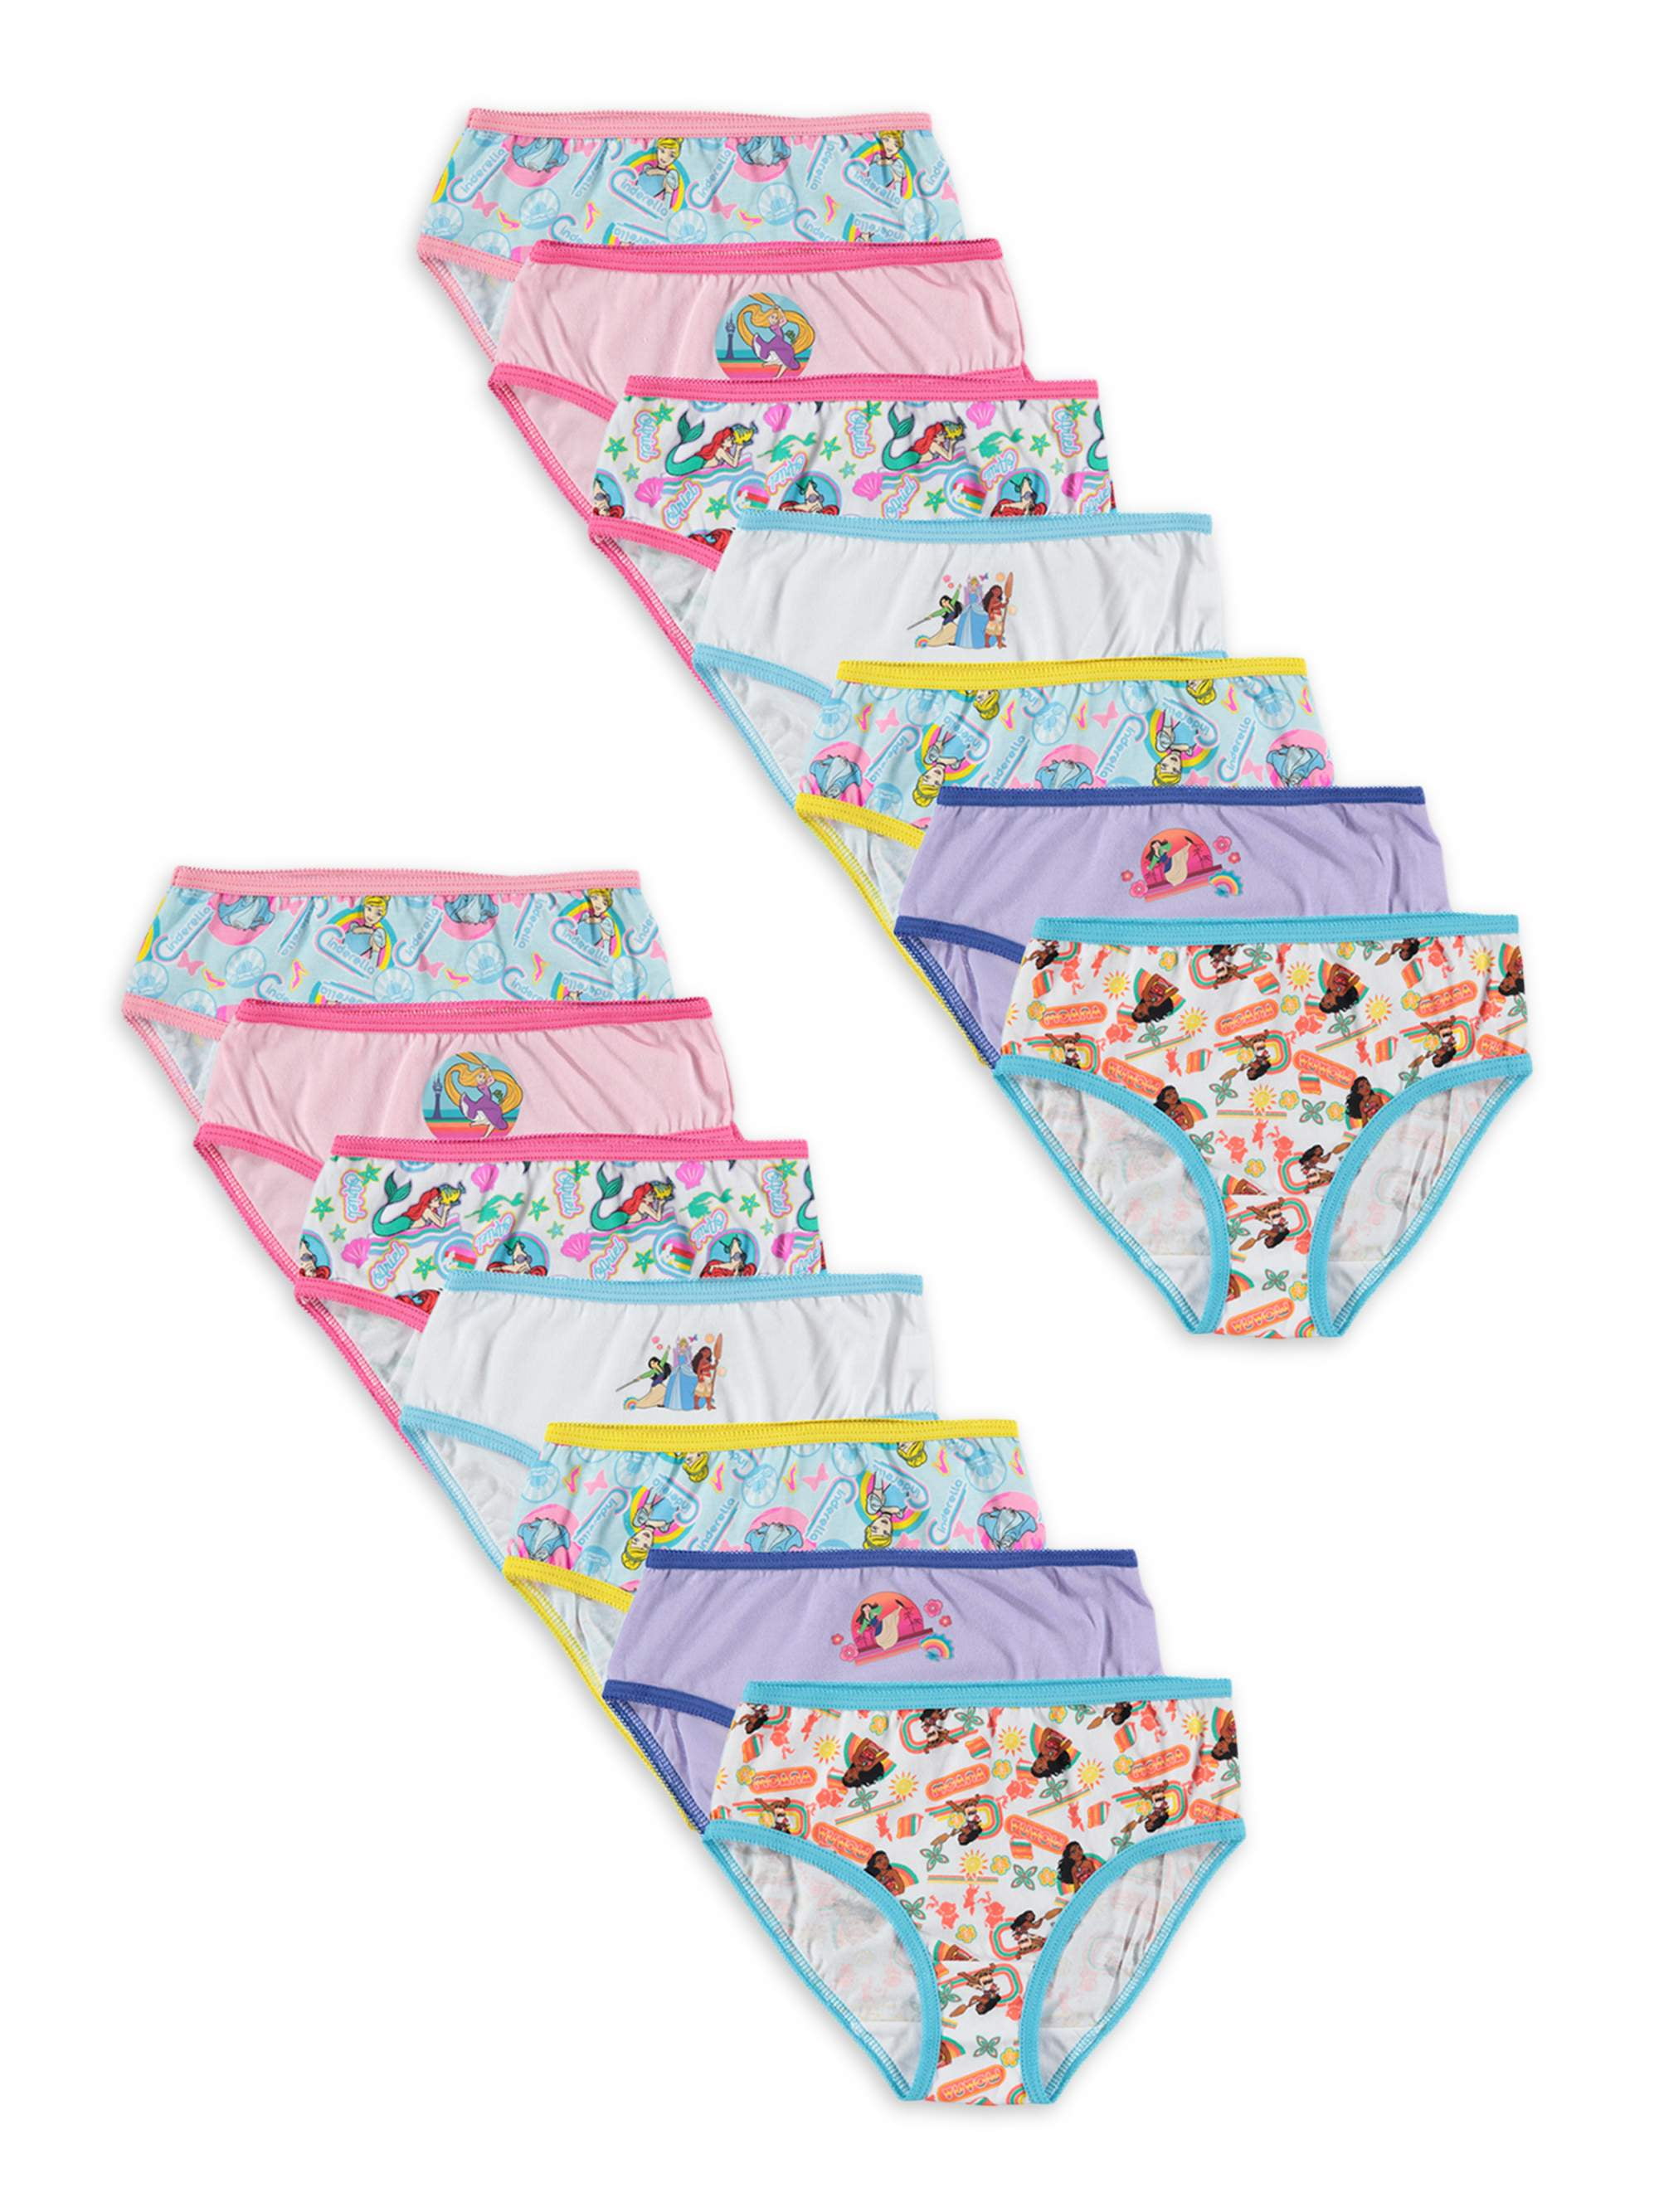 Disney Princess Girls Brief Underwear 14-Pack, Sizes 4-8 